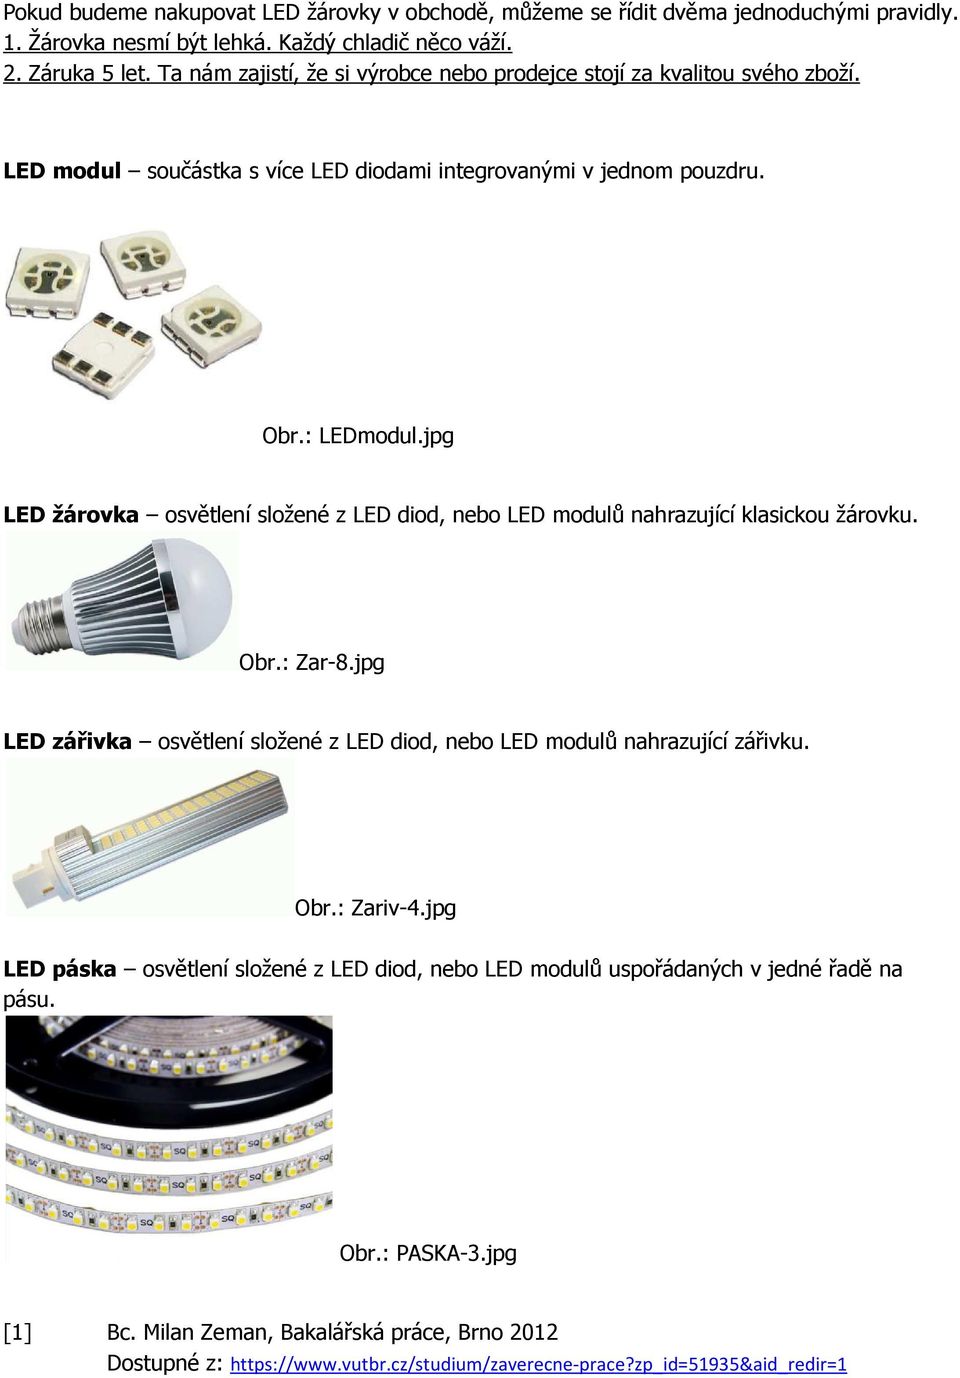 LED žárovka 2 W. Cena, účinnost a životnost - PDF Stažení zdarma